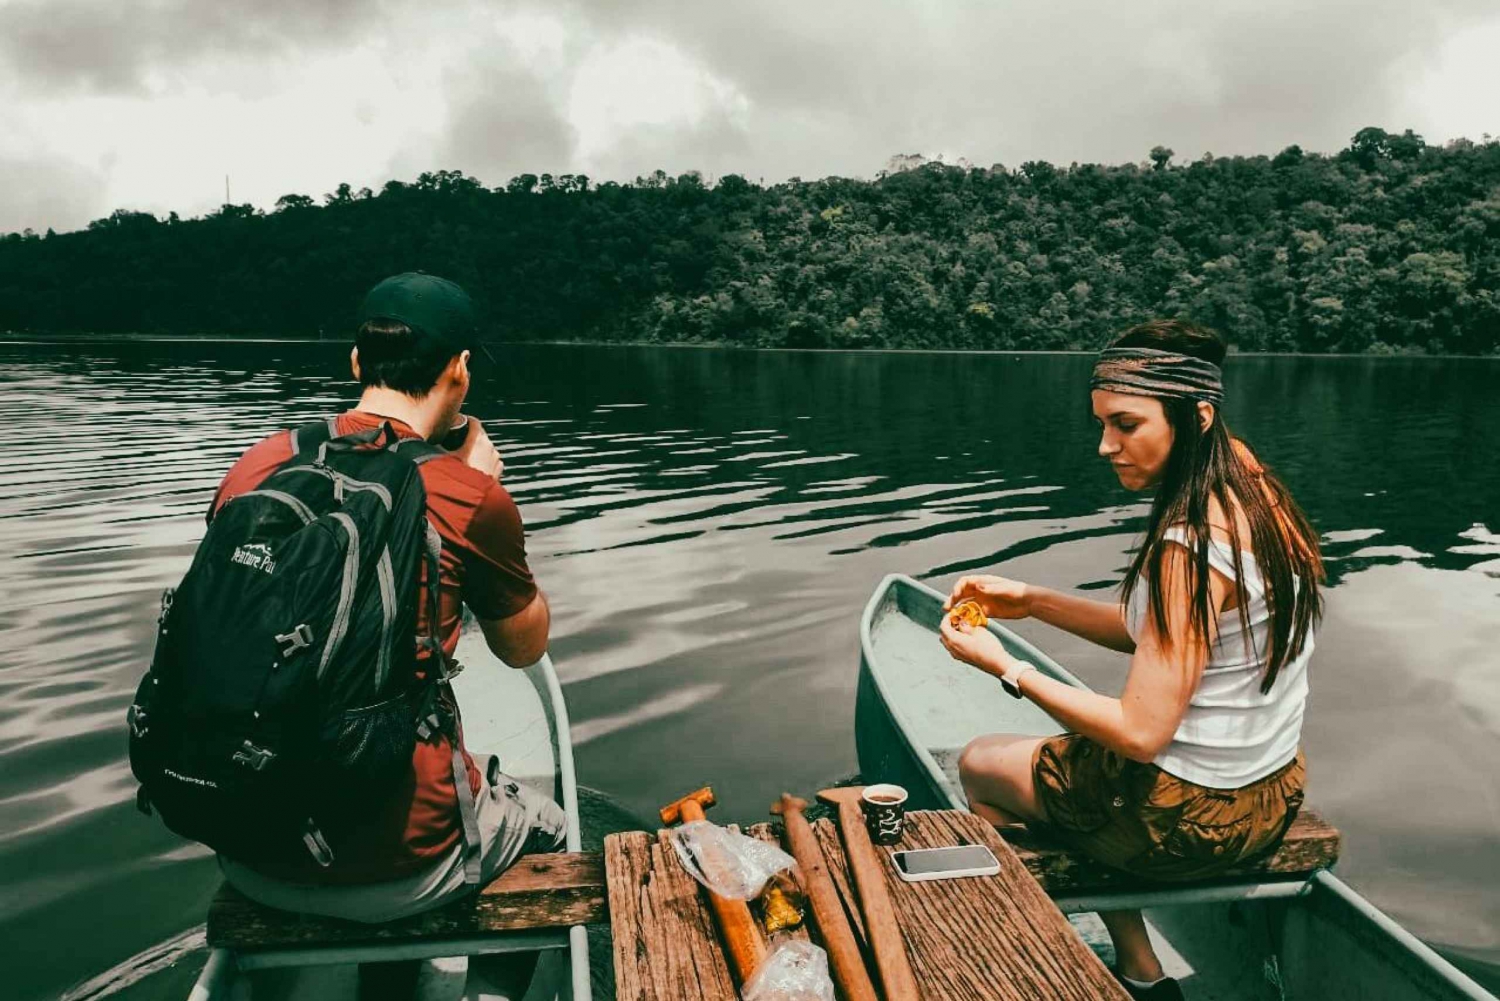 Munduk: Kanotpaddling i sjön och upptäcktsfärd i ett hemligt tempel